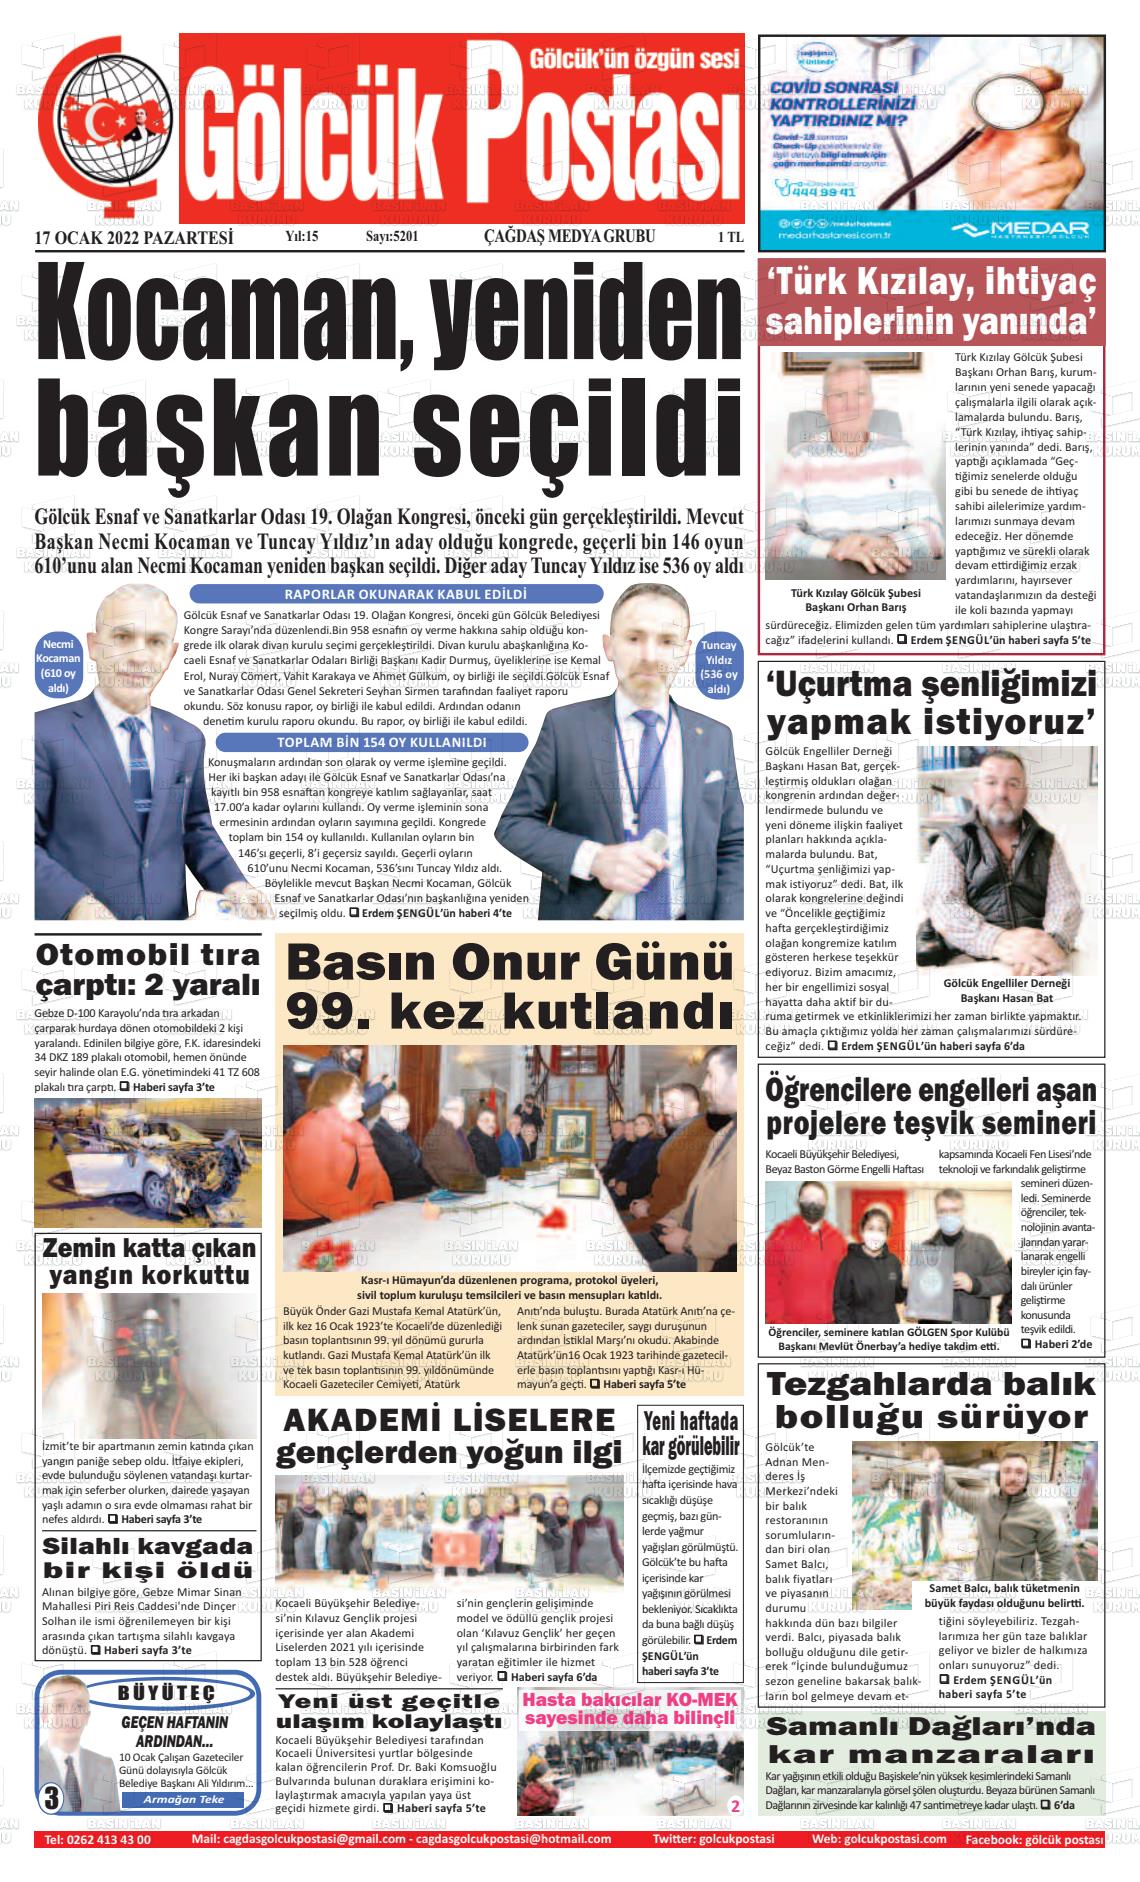 17 Ocak 2022 Gölcük Postasi Gazete Manşeti